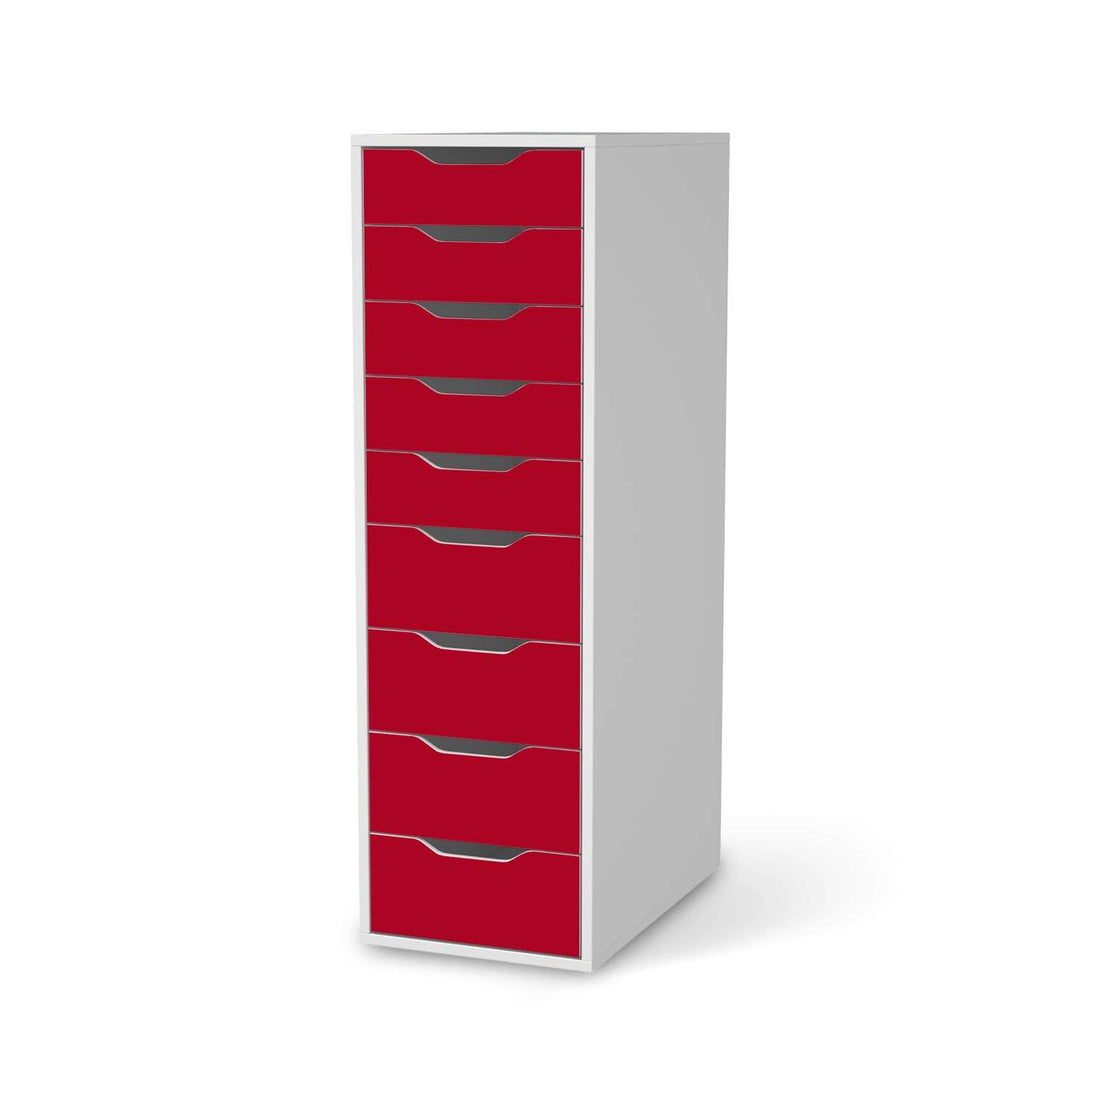 Folie für Möbel Rot Dark - IKEA Alex 9 Schubladen - weiss